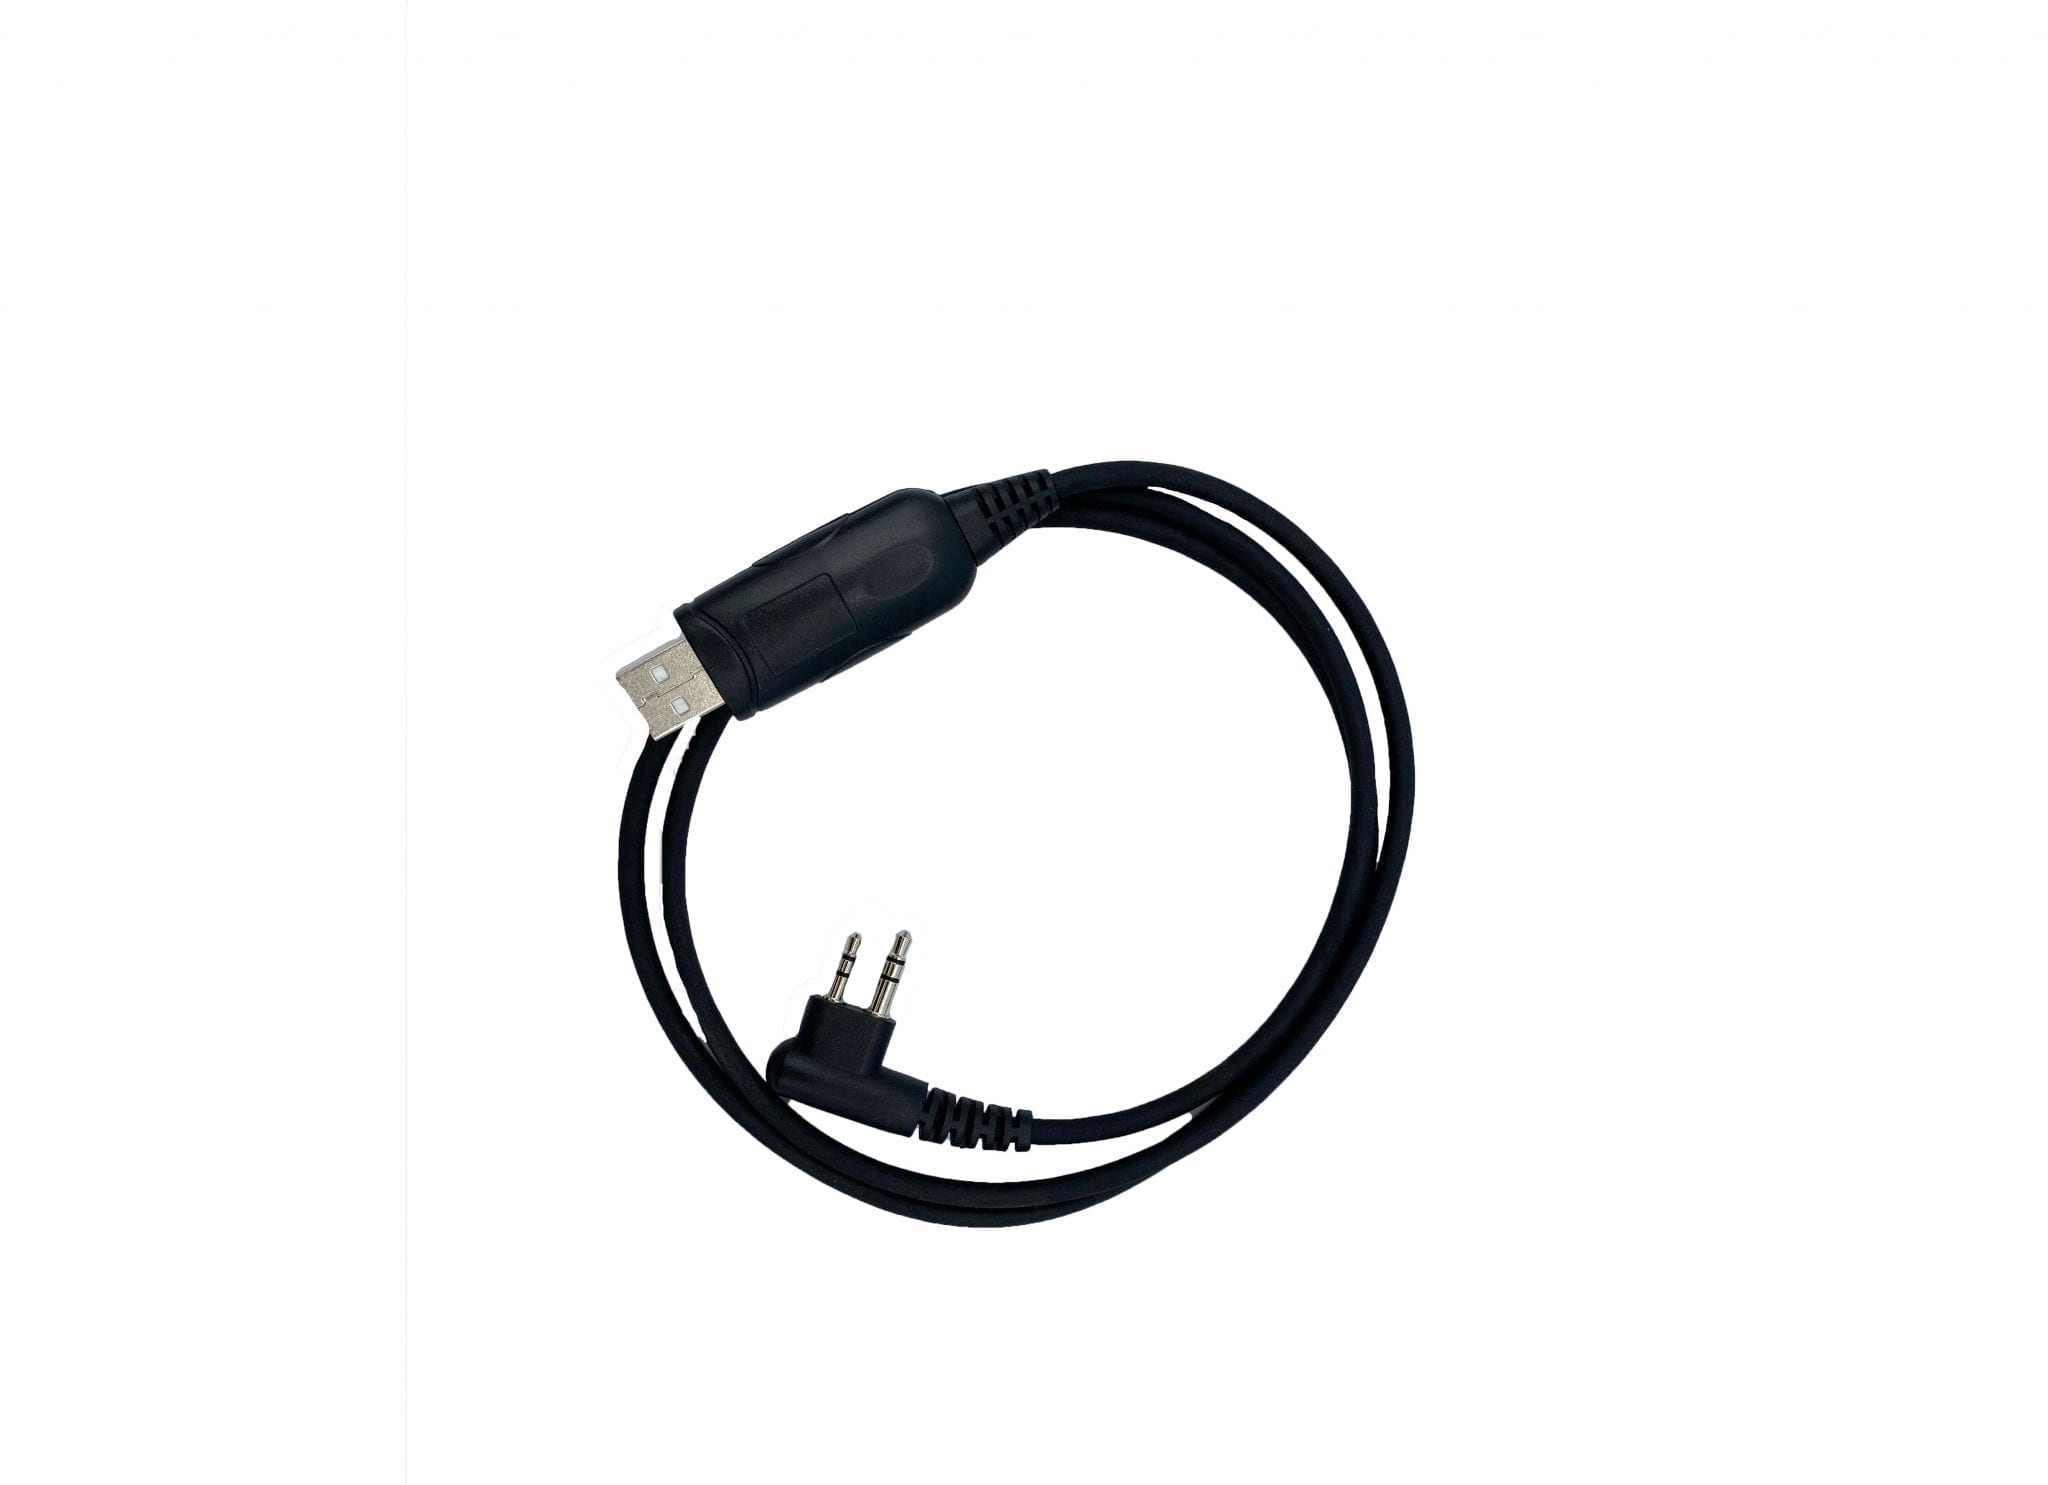 USB Programming Cable for RCA BR200 Analog Radio - Allcan Distributors